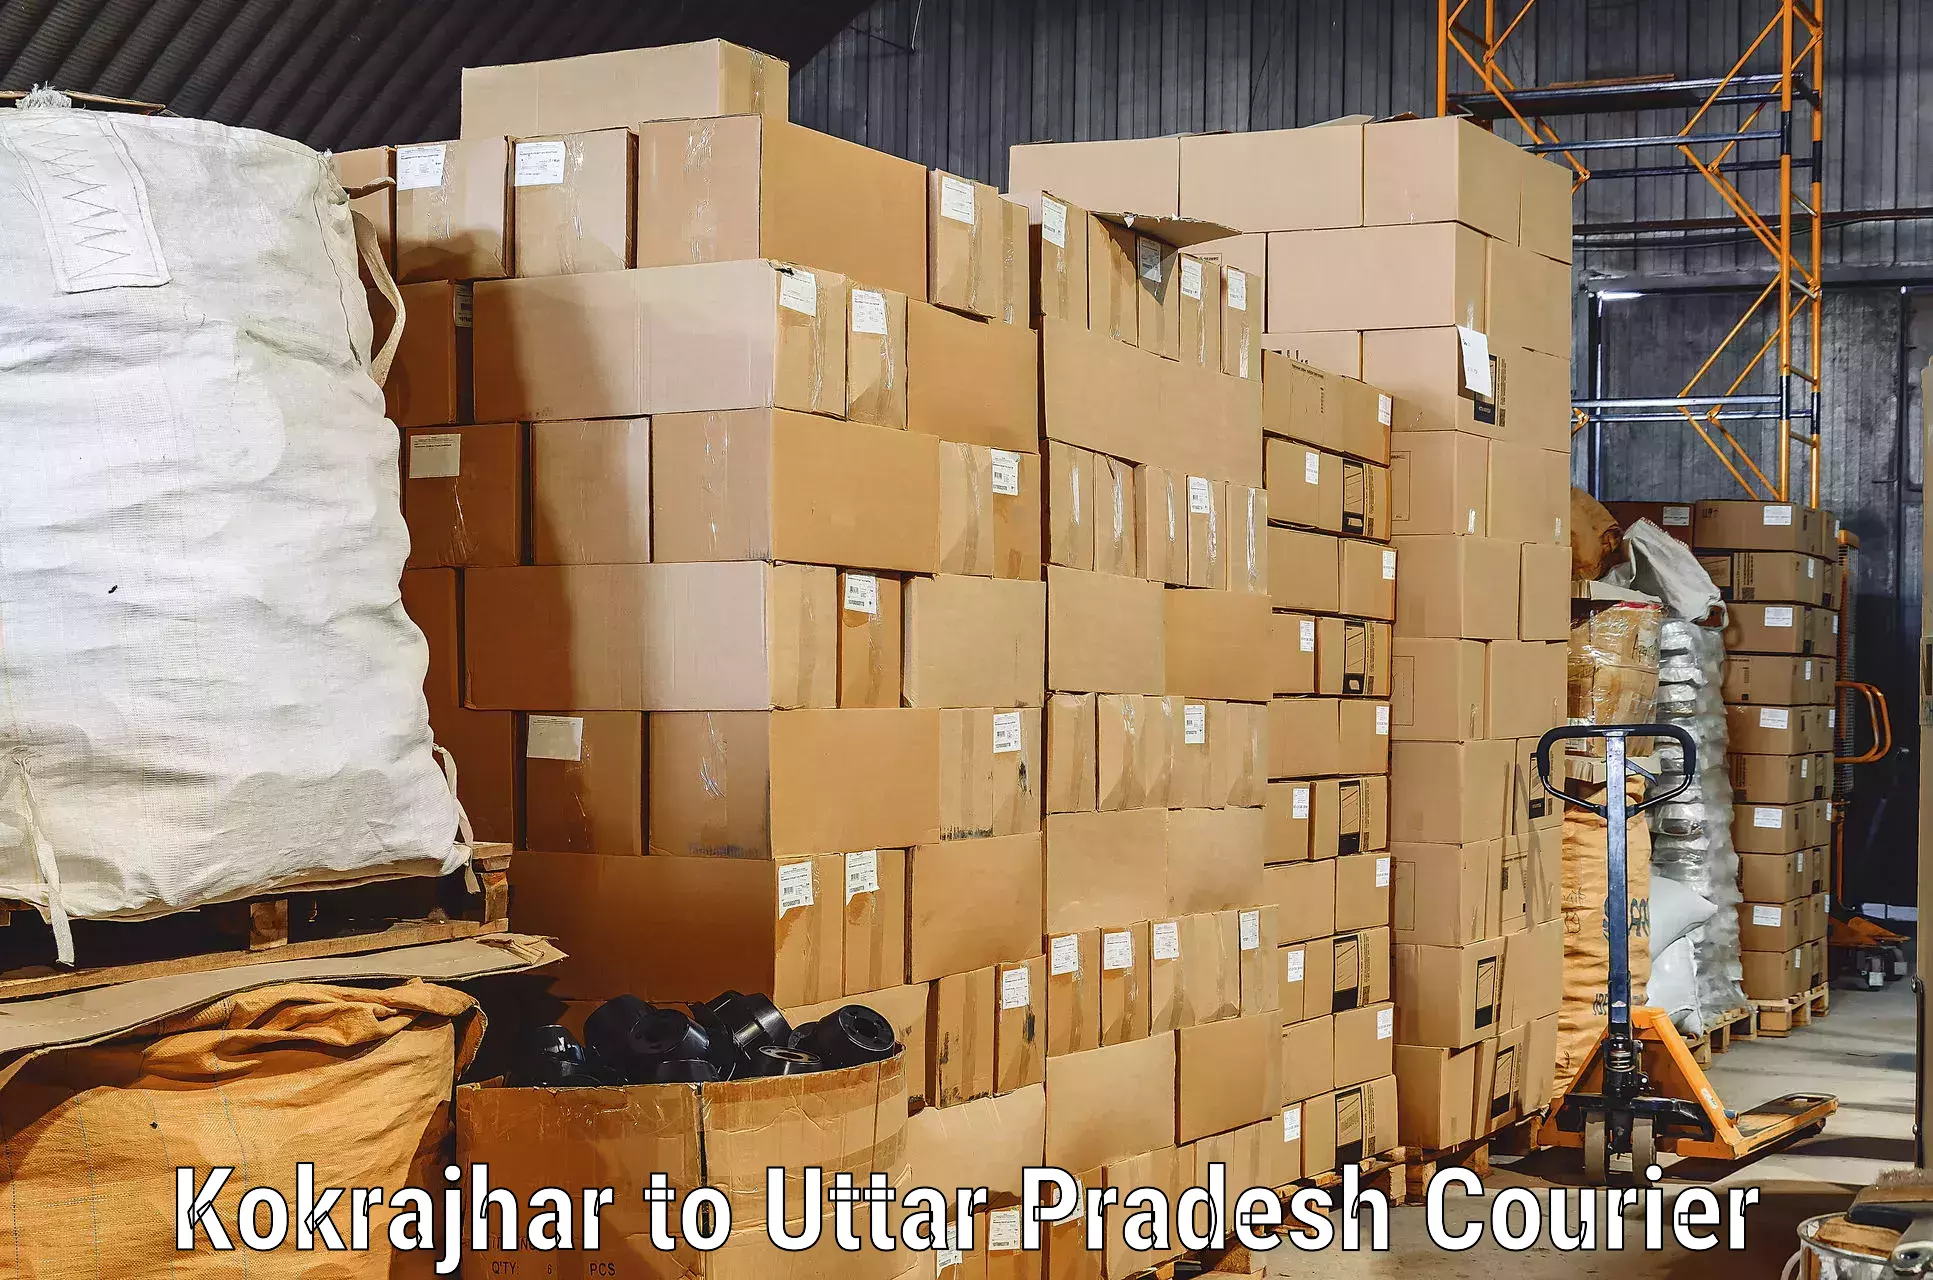 Furniture transport specialists Kokrajhar to Rampur Maniharan